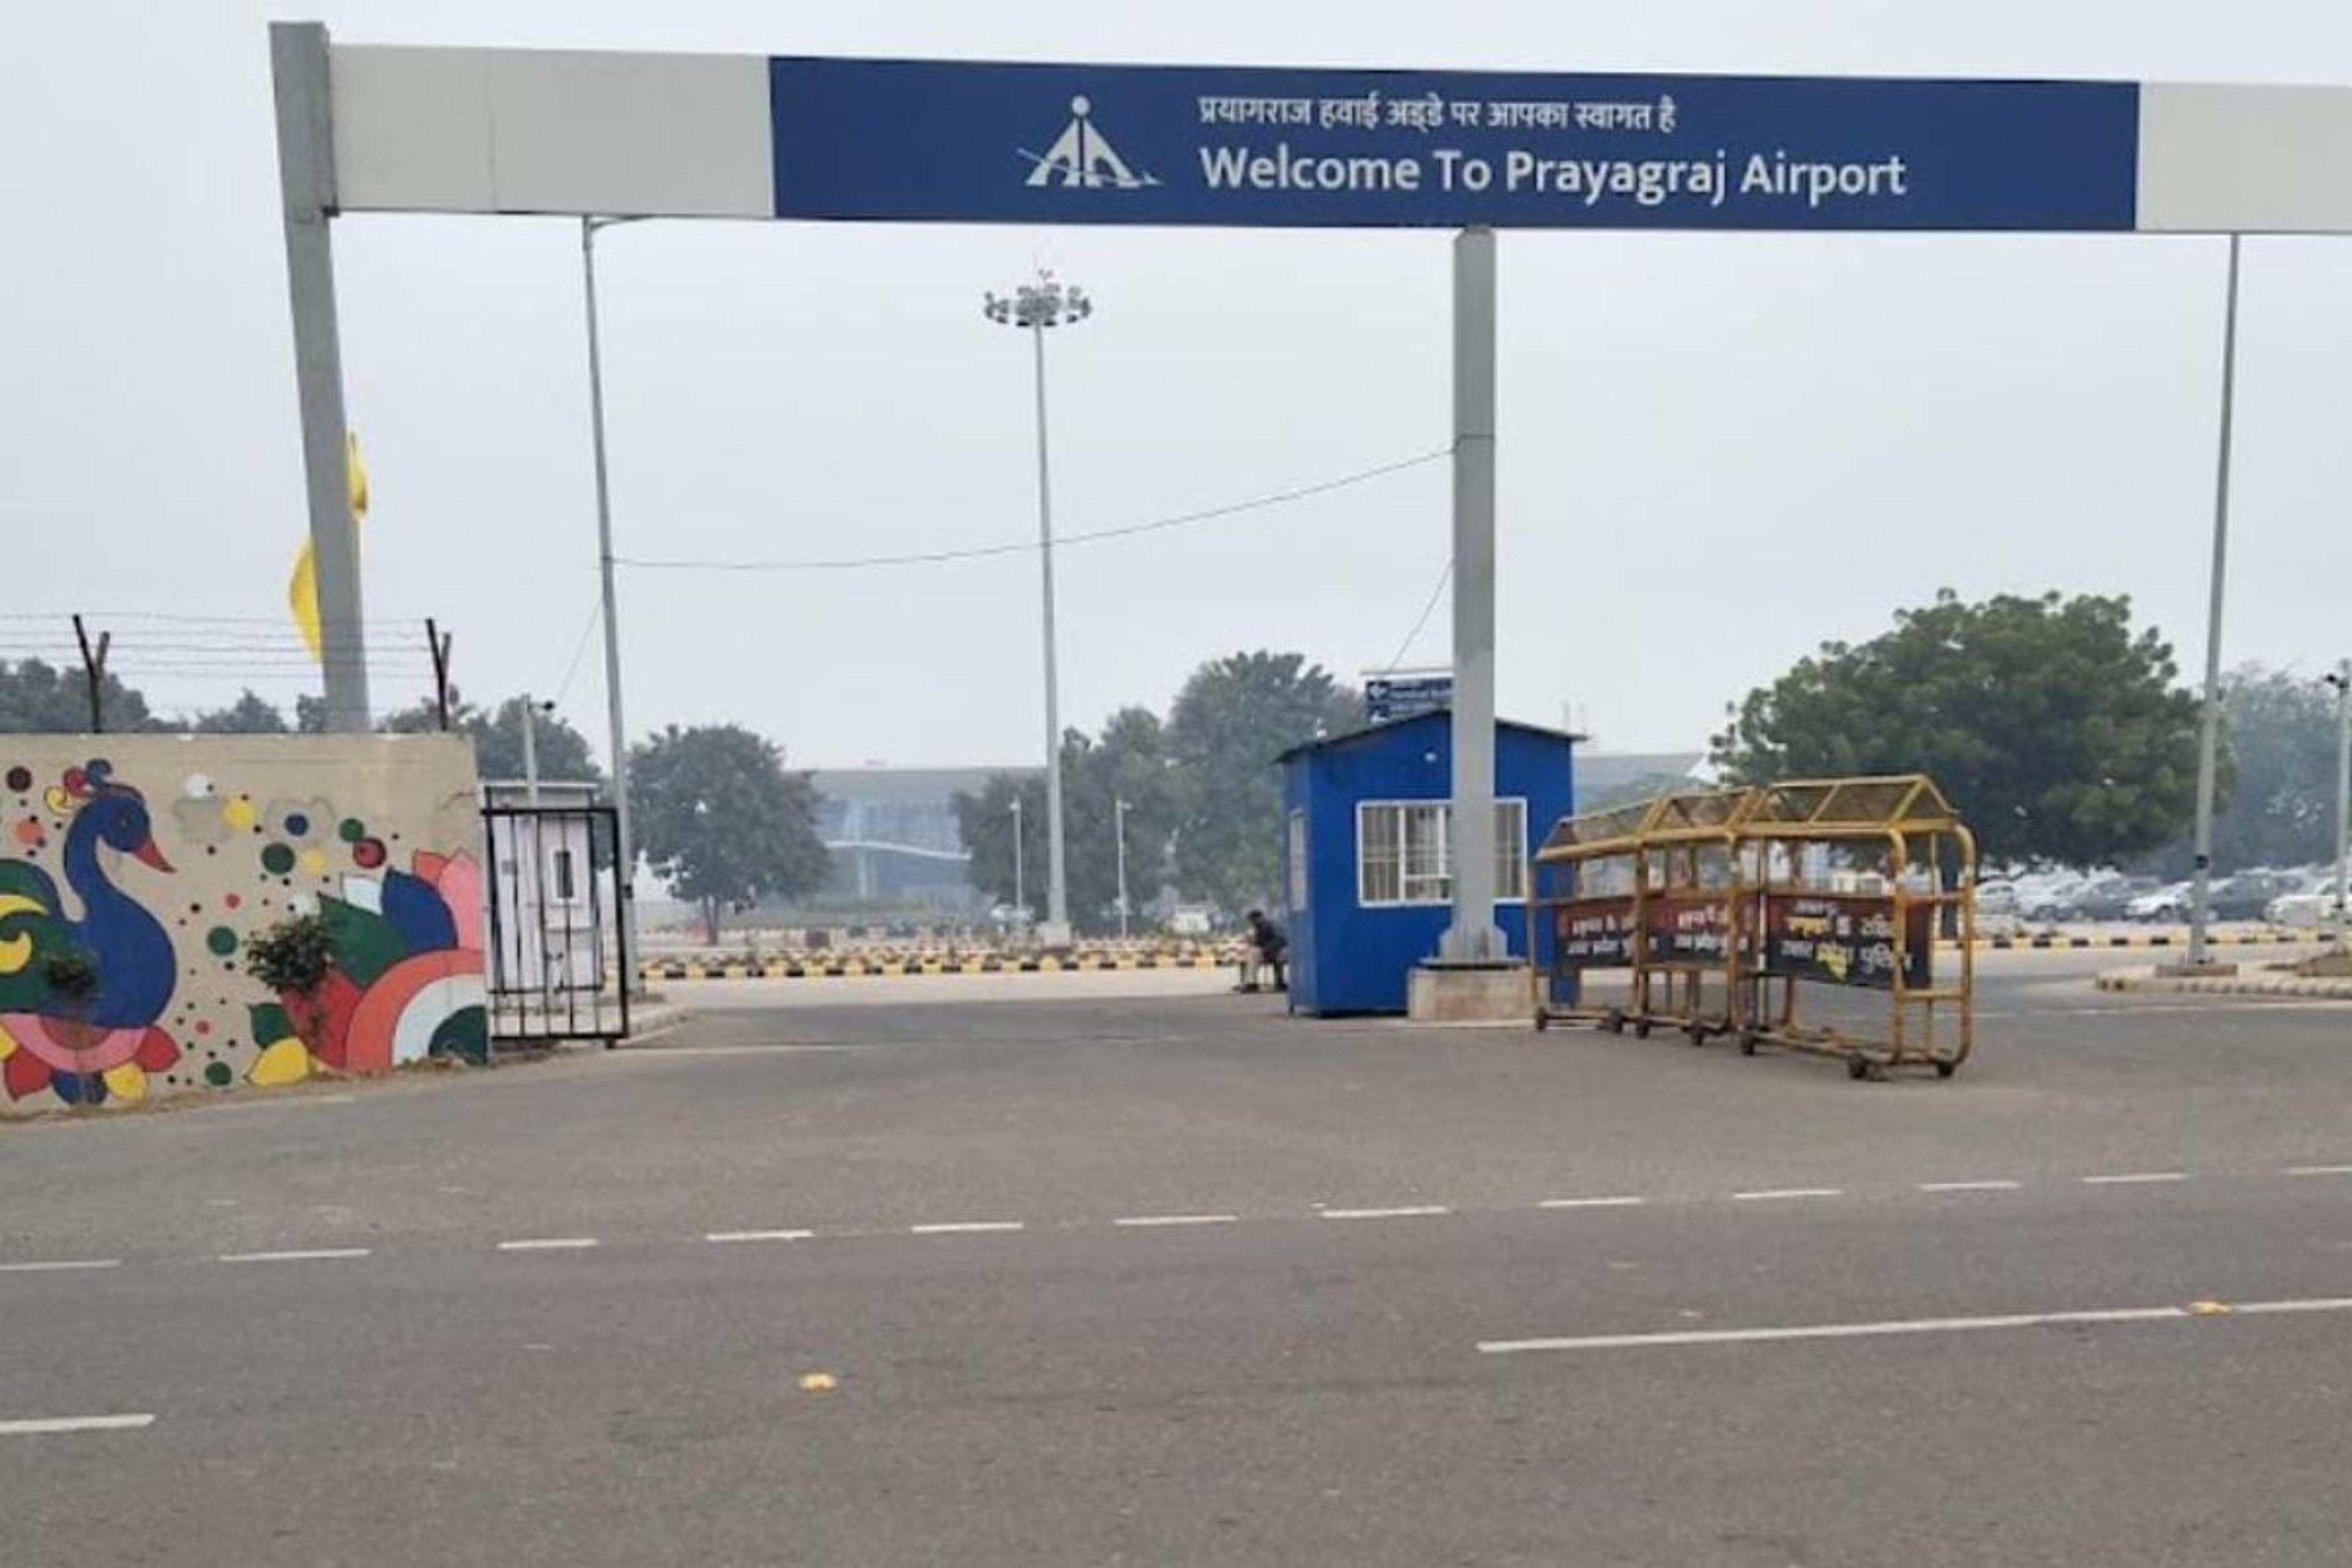 खुशखबरी: प्रयागराज एयरपोर्ट से मुंबई के लिए उड़ान भरेगा अकाशा एयर का विमान डेट
हुई फिक्स,यहां जाने टाइमिंग और किराया